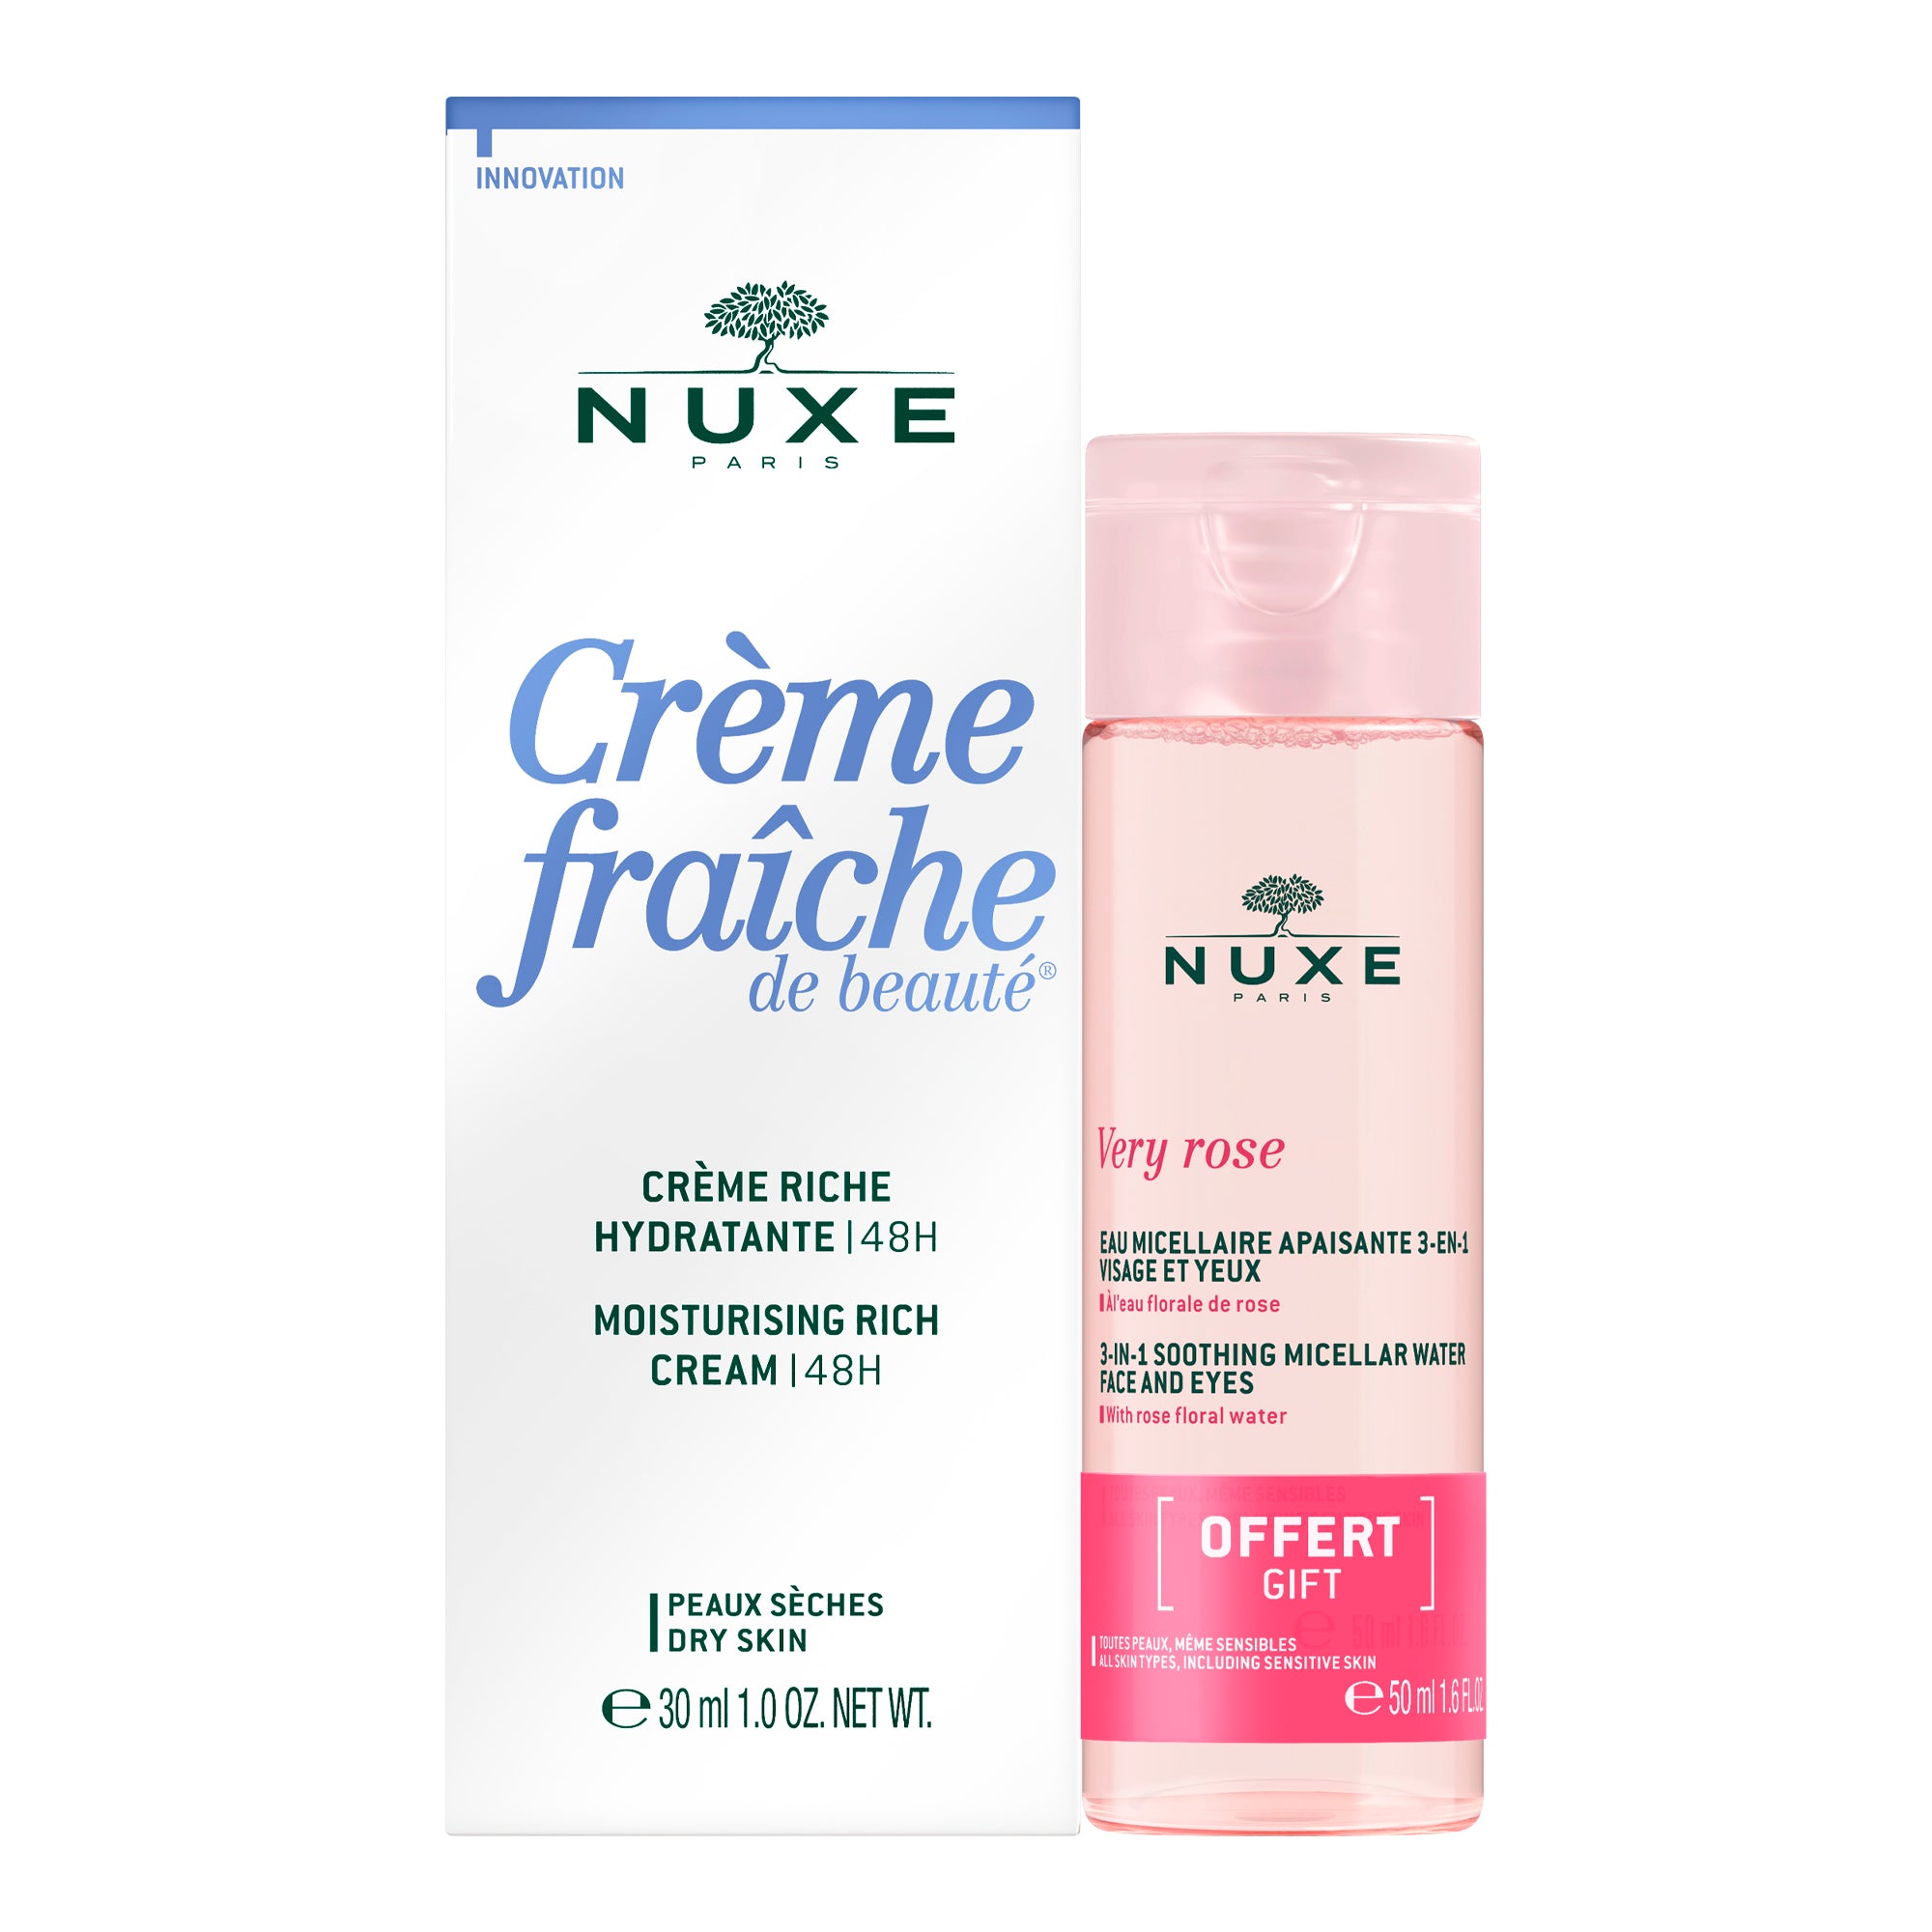 NUXE Crème fraiche de beauté - KIT CREMA RICA HIDRADANTE | 48H 30ml + AGUA MICELAR CALMANTE 3-EN-1 50ML GRATIS